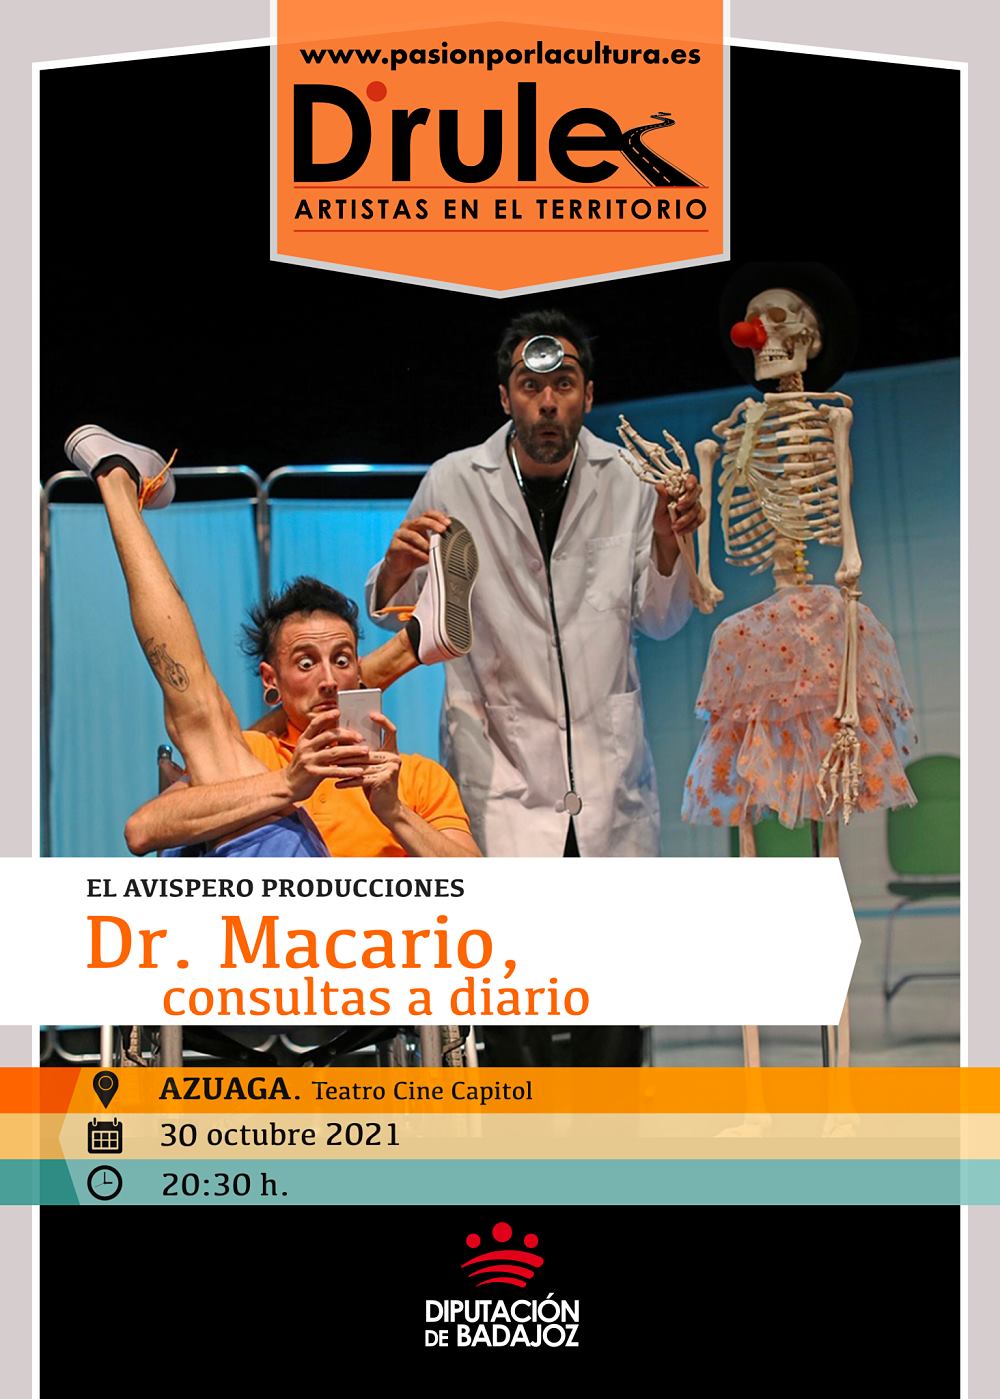 TEATRO | D'Rule 21: «Dr. Macario», de El Avispero Producciones